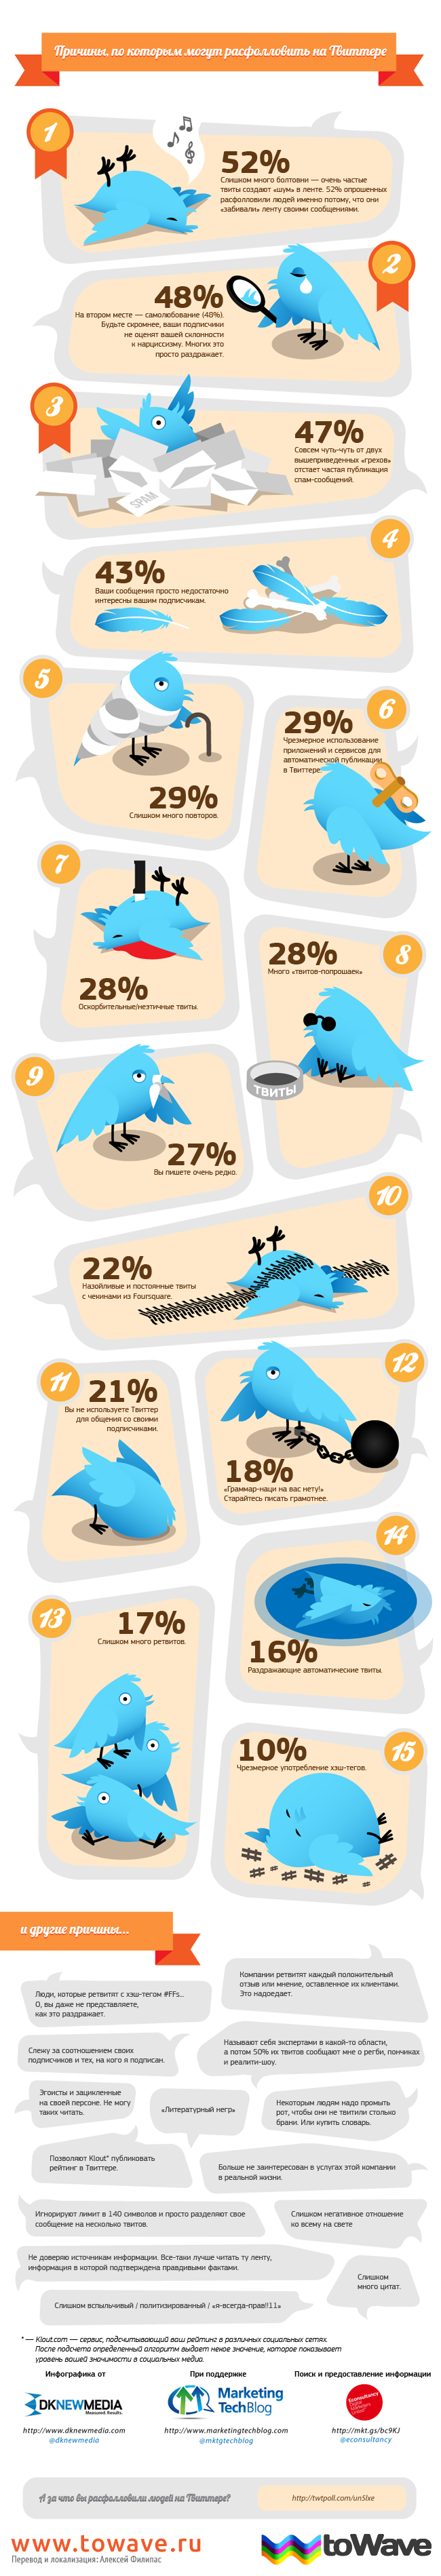 Инфографика: причины, по которым могут расфолловить в Твиттере